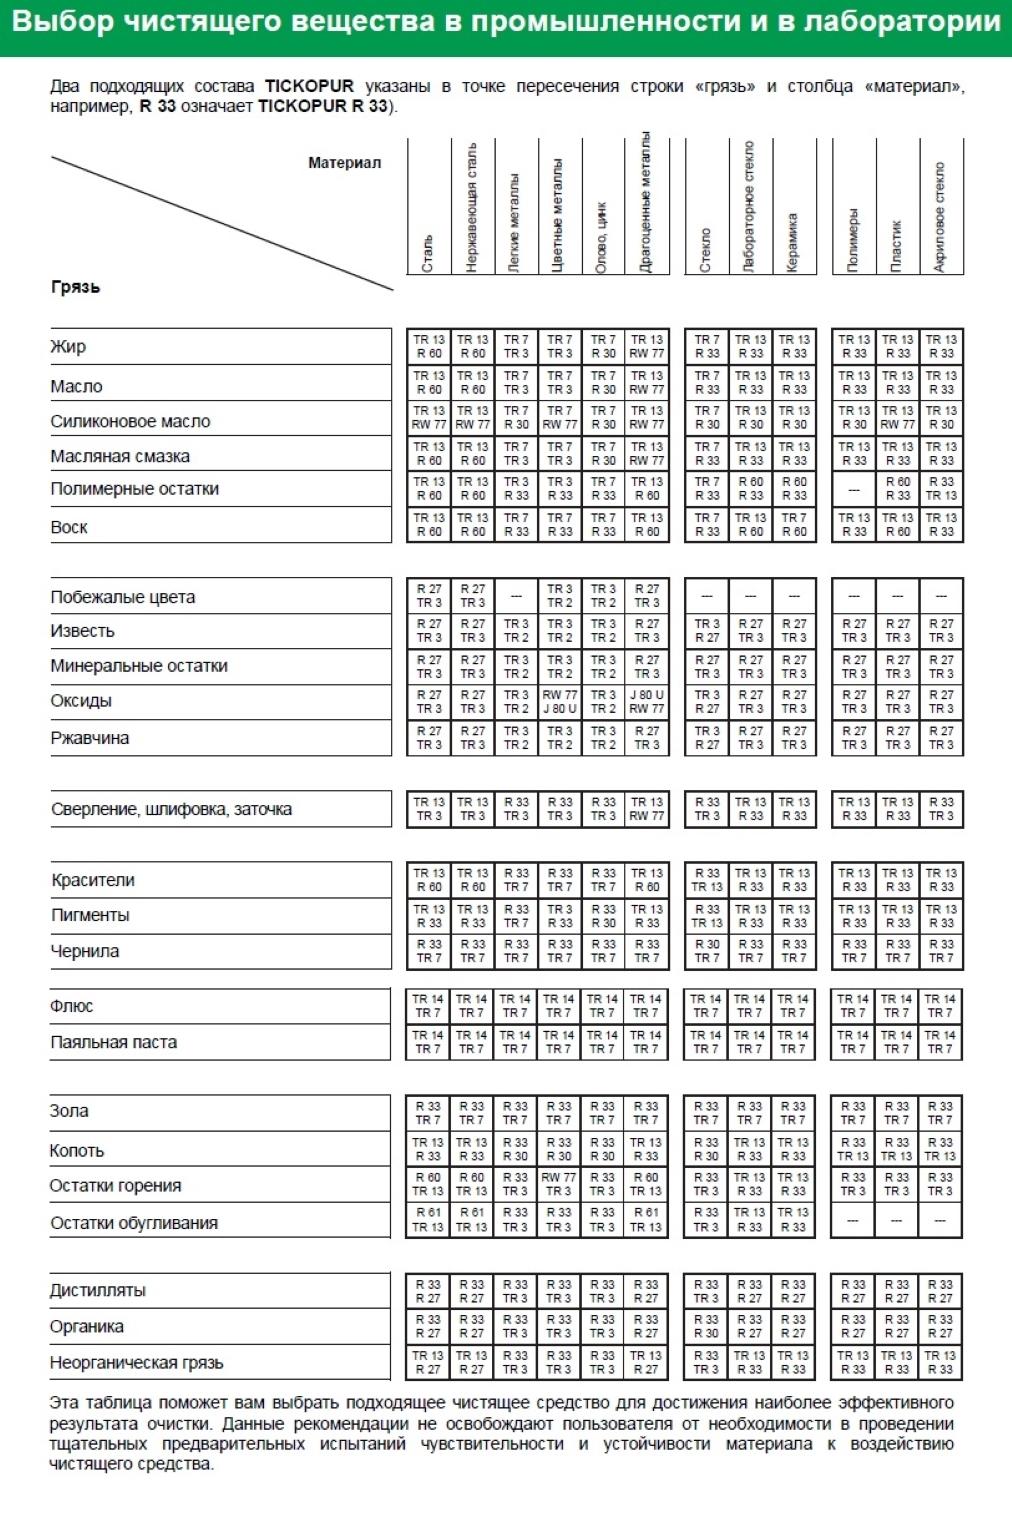 Таблица выбора чистящего вещества R 60 TICKOPUR